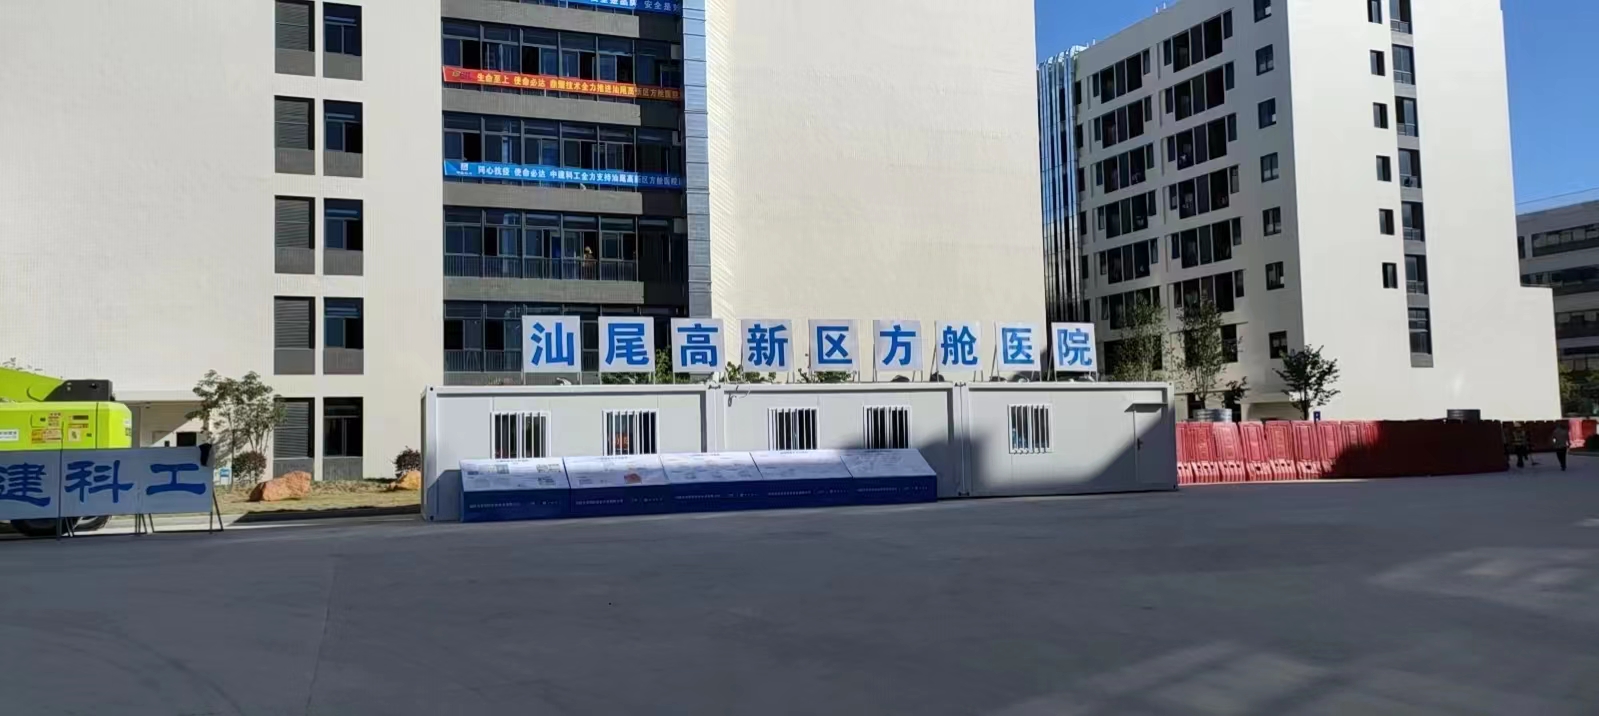 祝賀汕尾高(gāo)新區方艙醫院菲格朗大巴車洗消中心消毒系統完工插圖